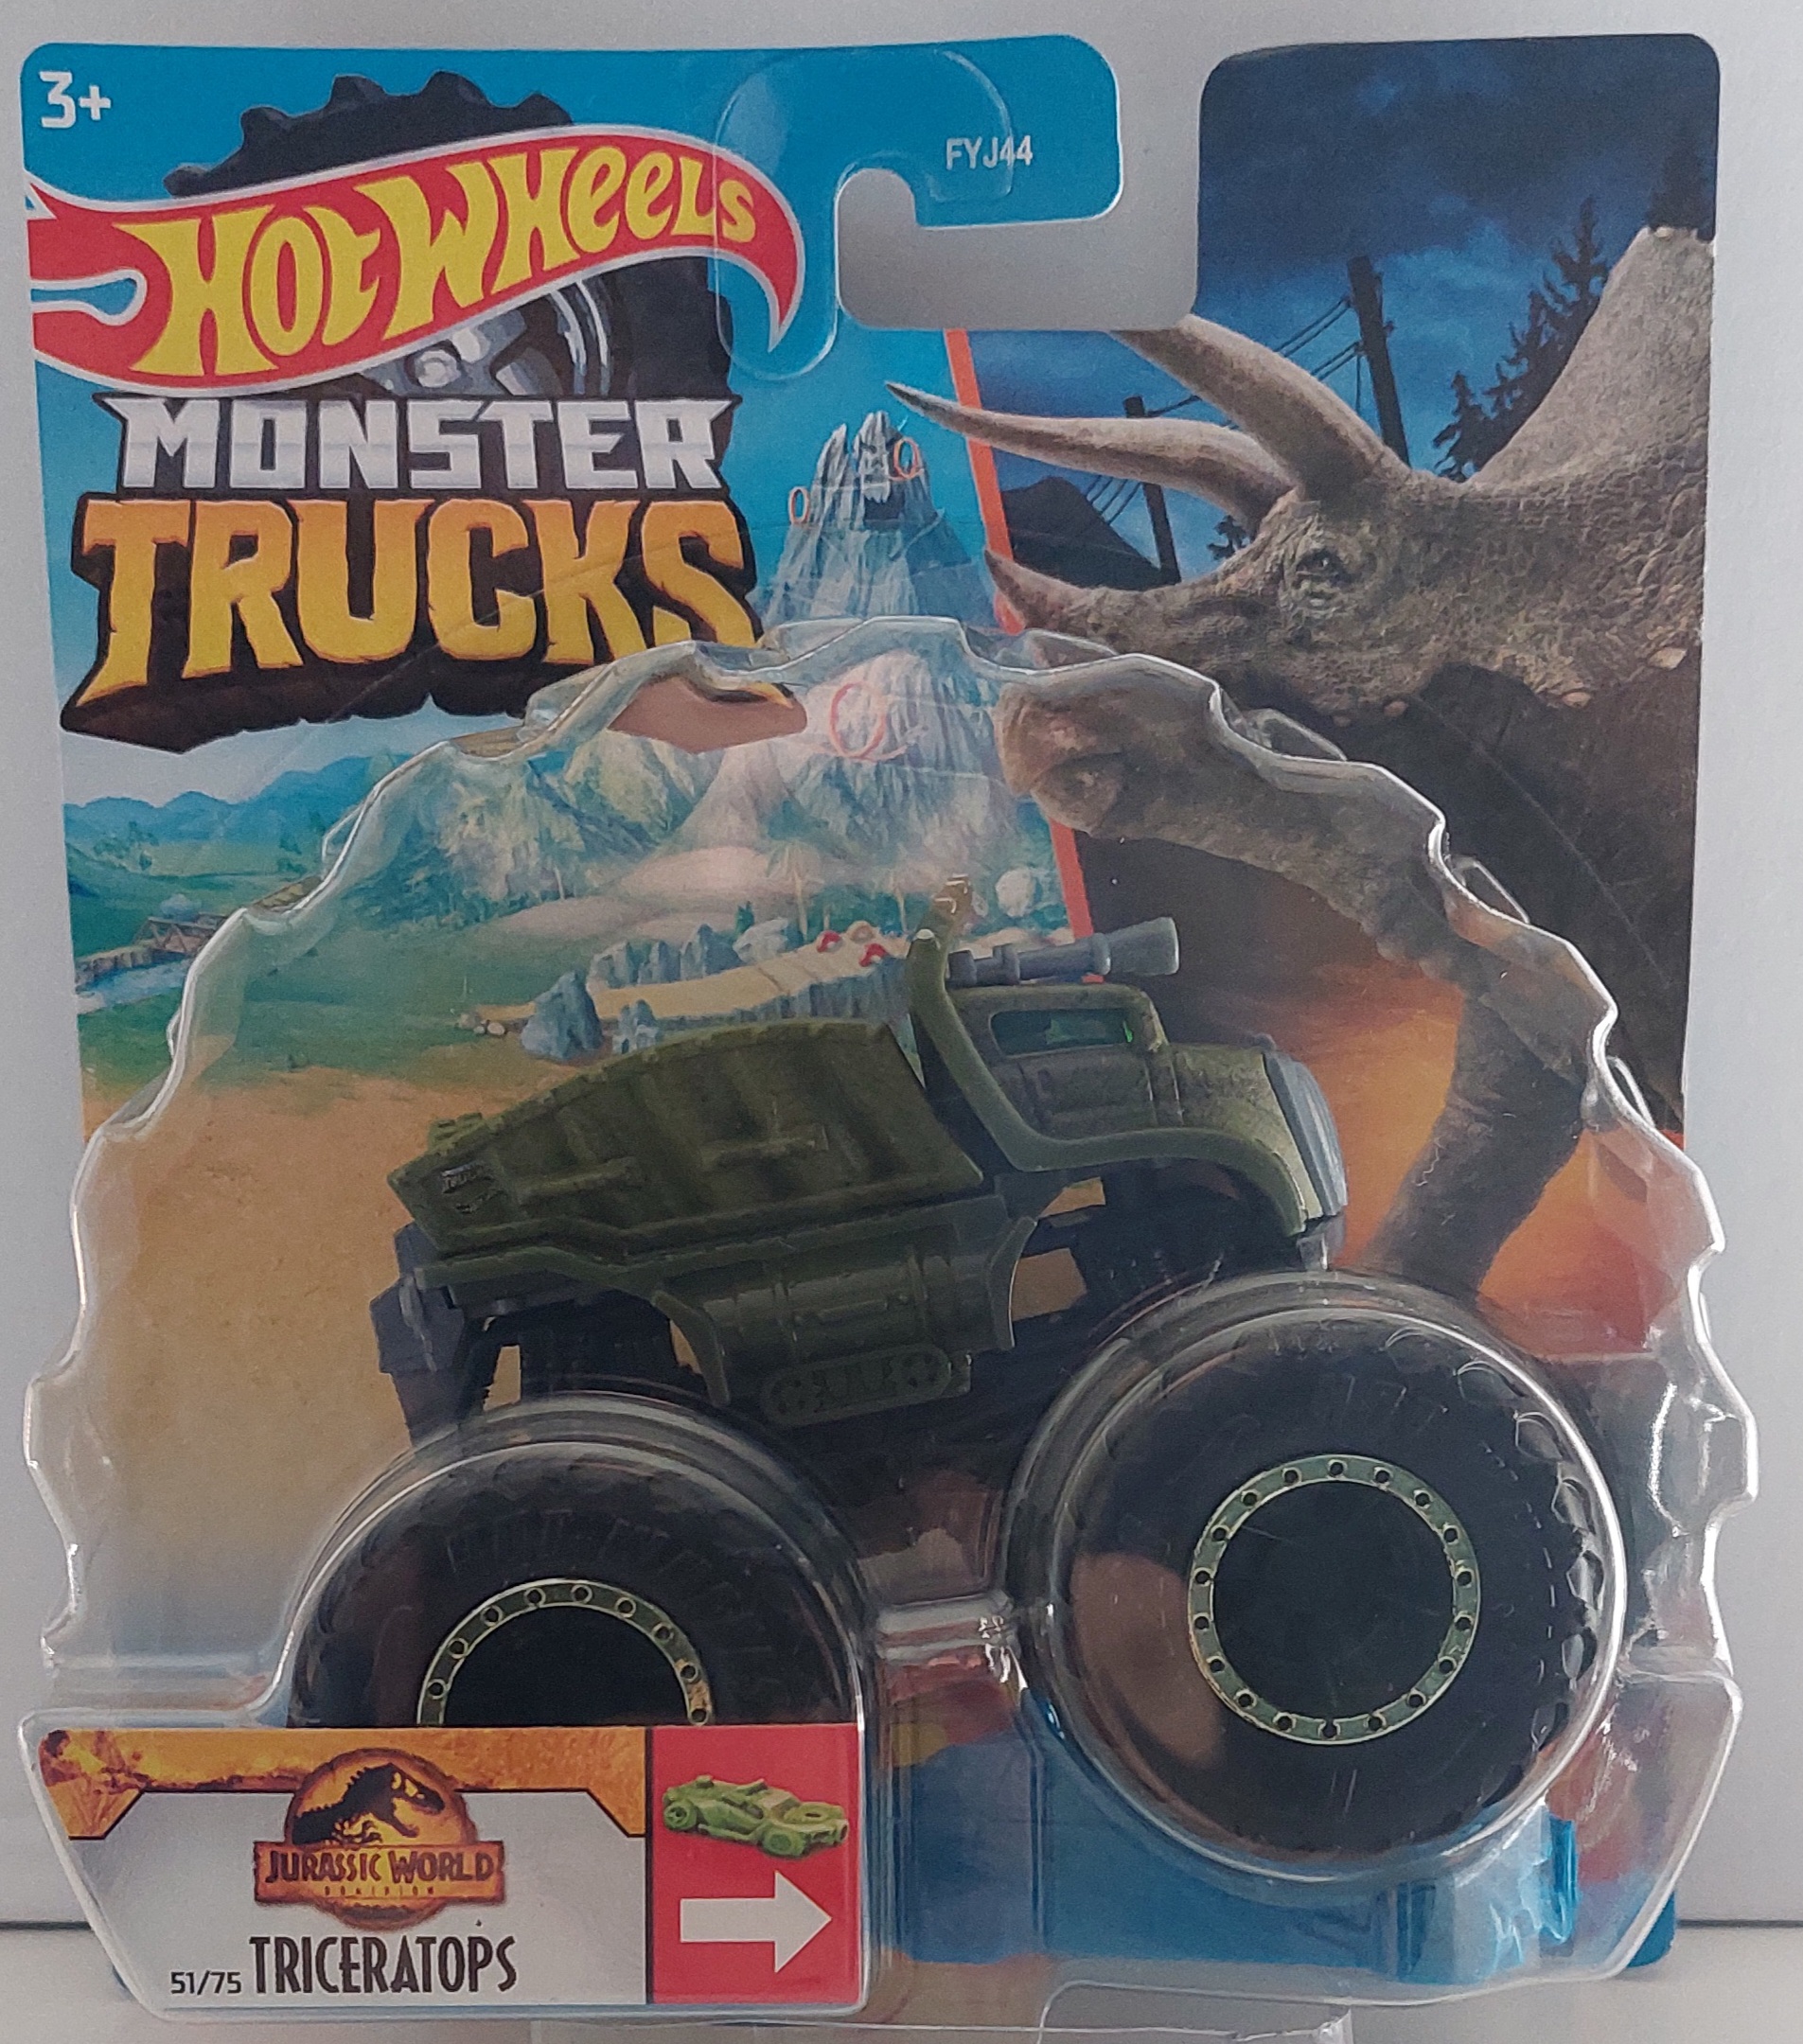 Hot Wheels, Monster Trucks Wiki